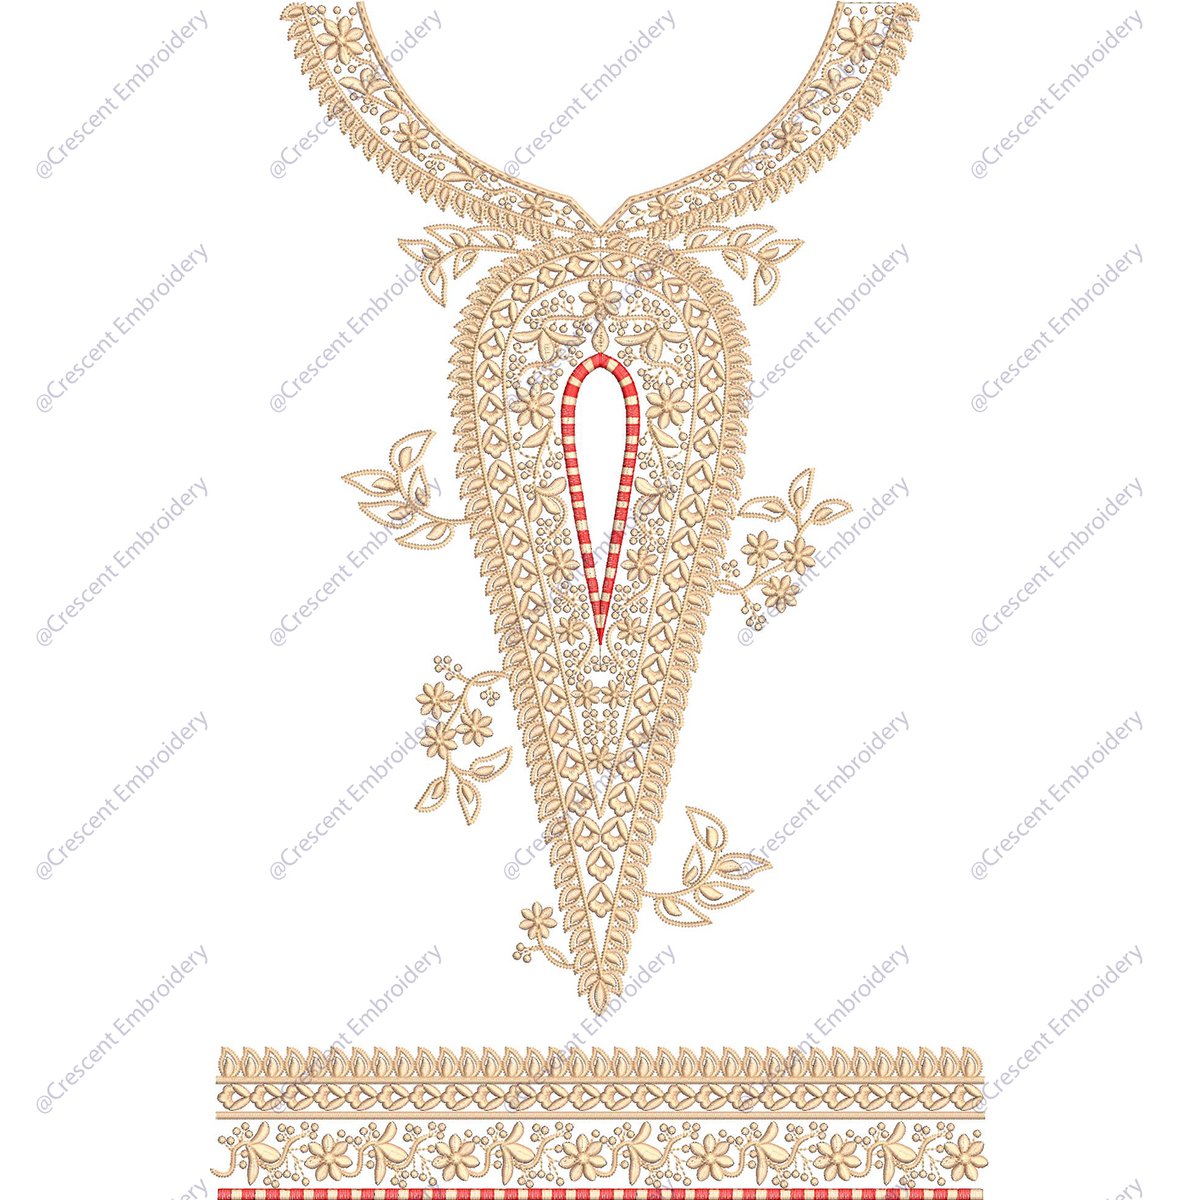 #embroidery #kaftaan #kaftanembroidery
#crescentembroidery
crescentembroidery.com/products?categ…